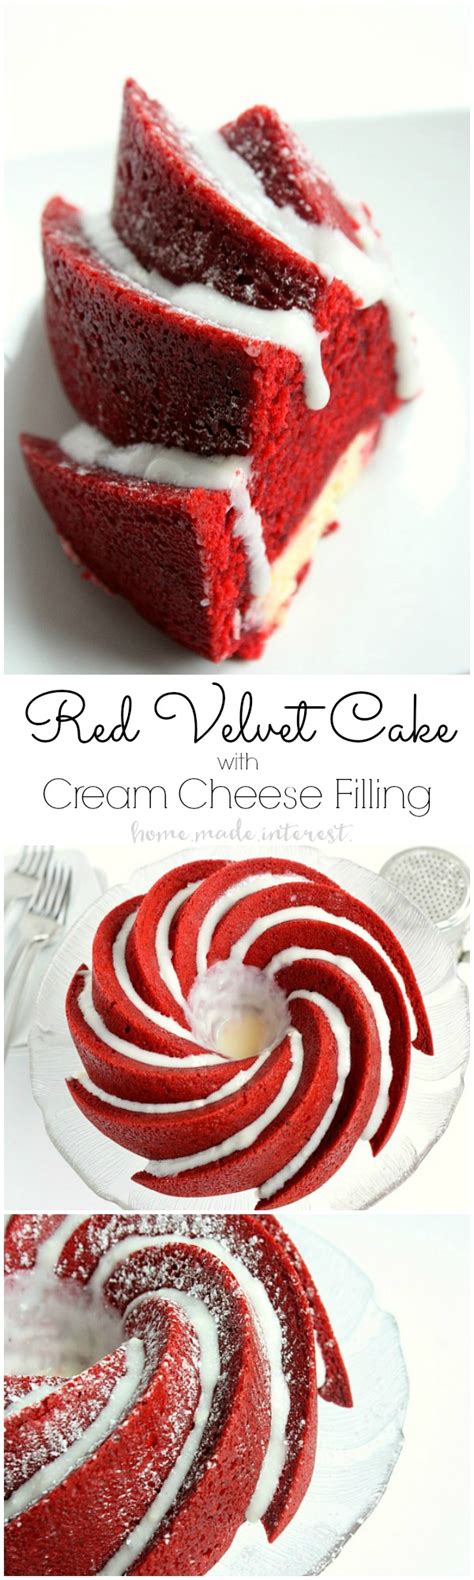 Red Velvet Bundt Cake Recipe Paula Deen